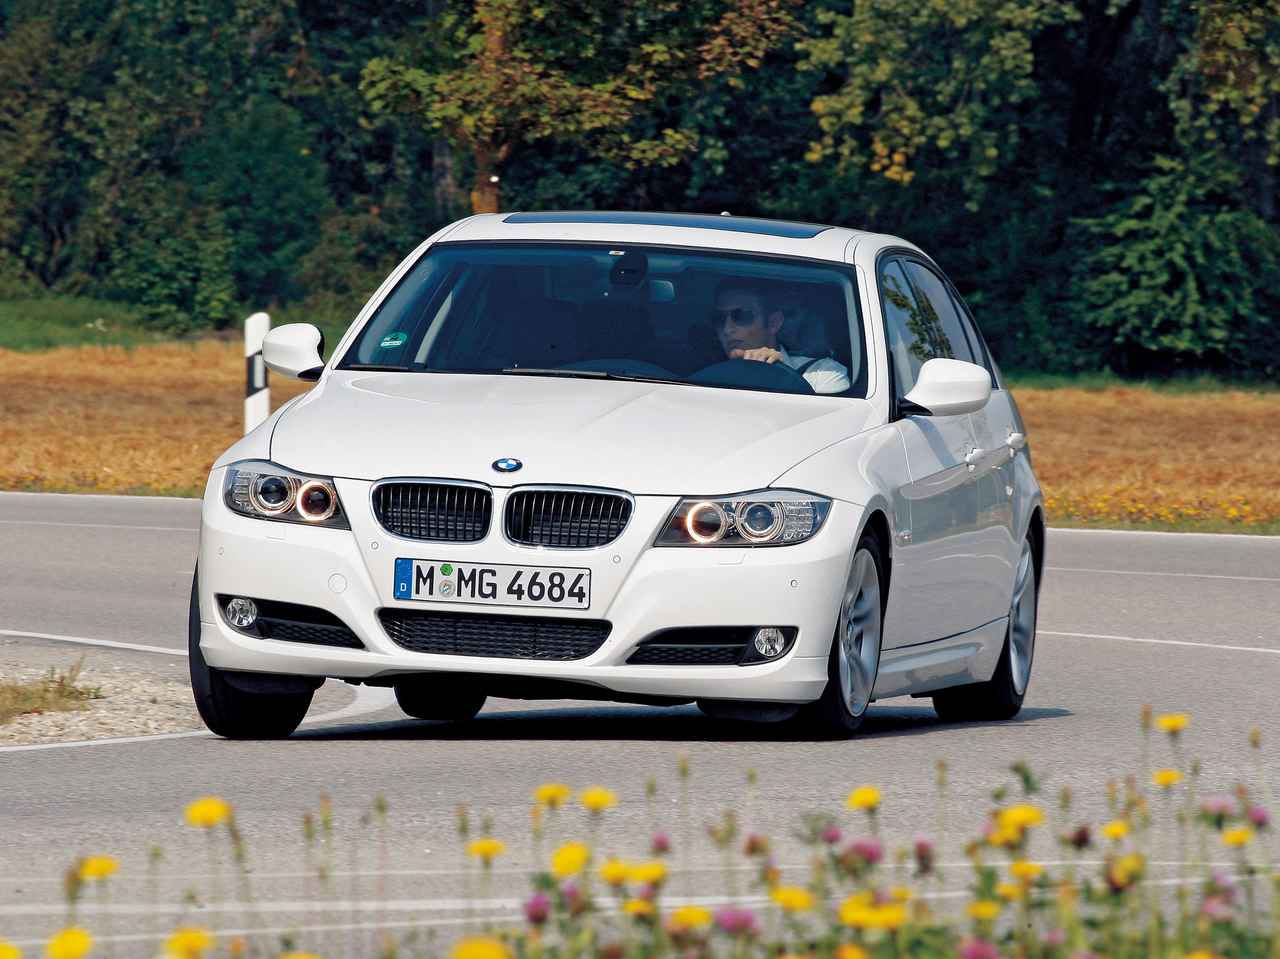 BMW 320d エフィシエント・ダイナミクス・エディションは、ハイブリッドに負けない燃費性能を実現【10年ひと昔の新車】